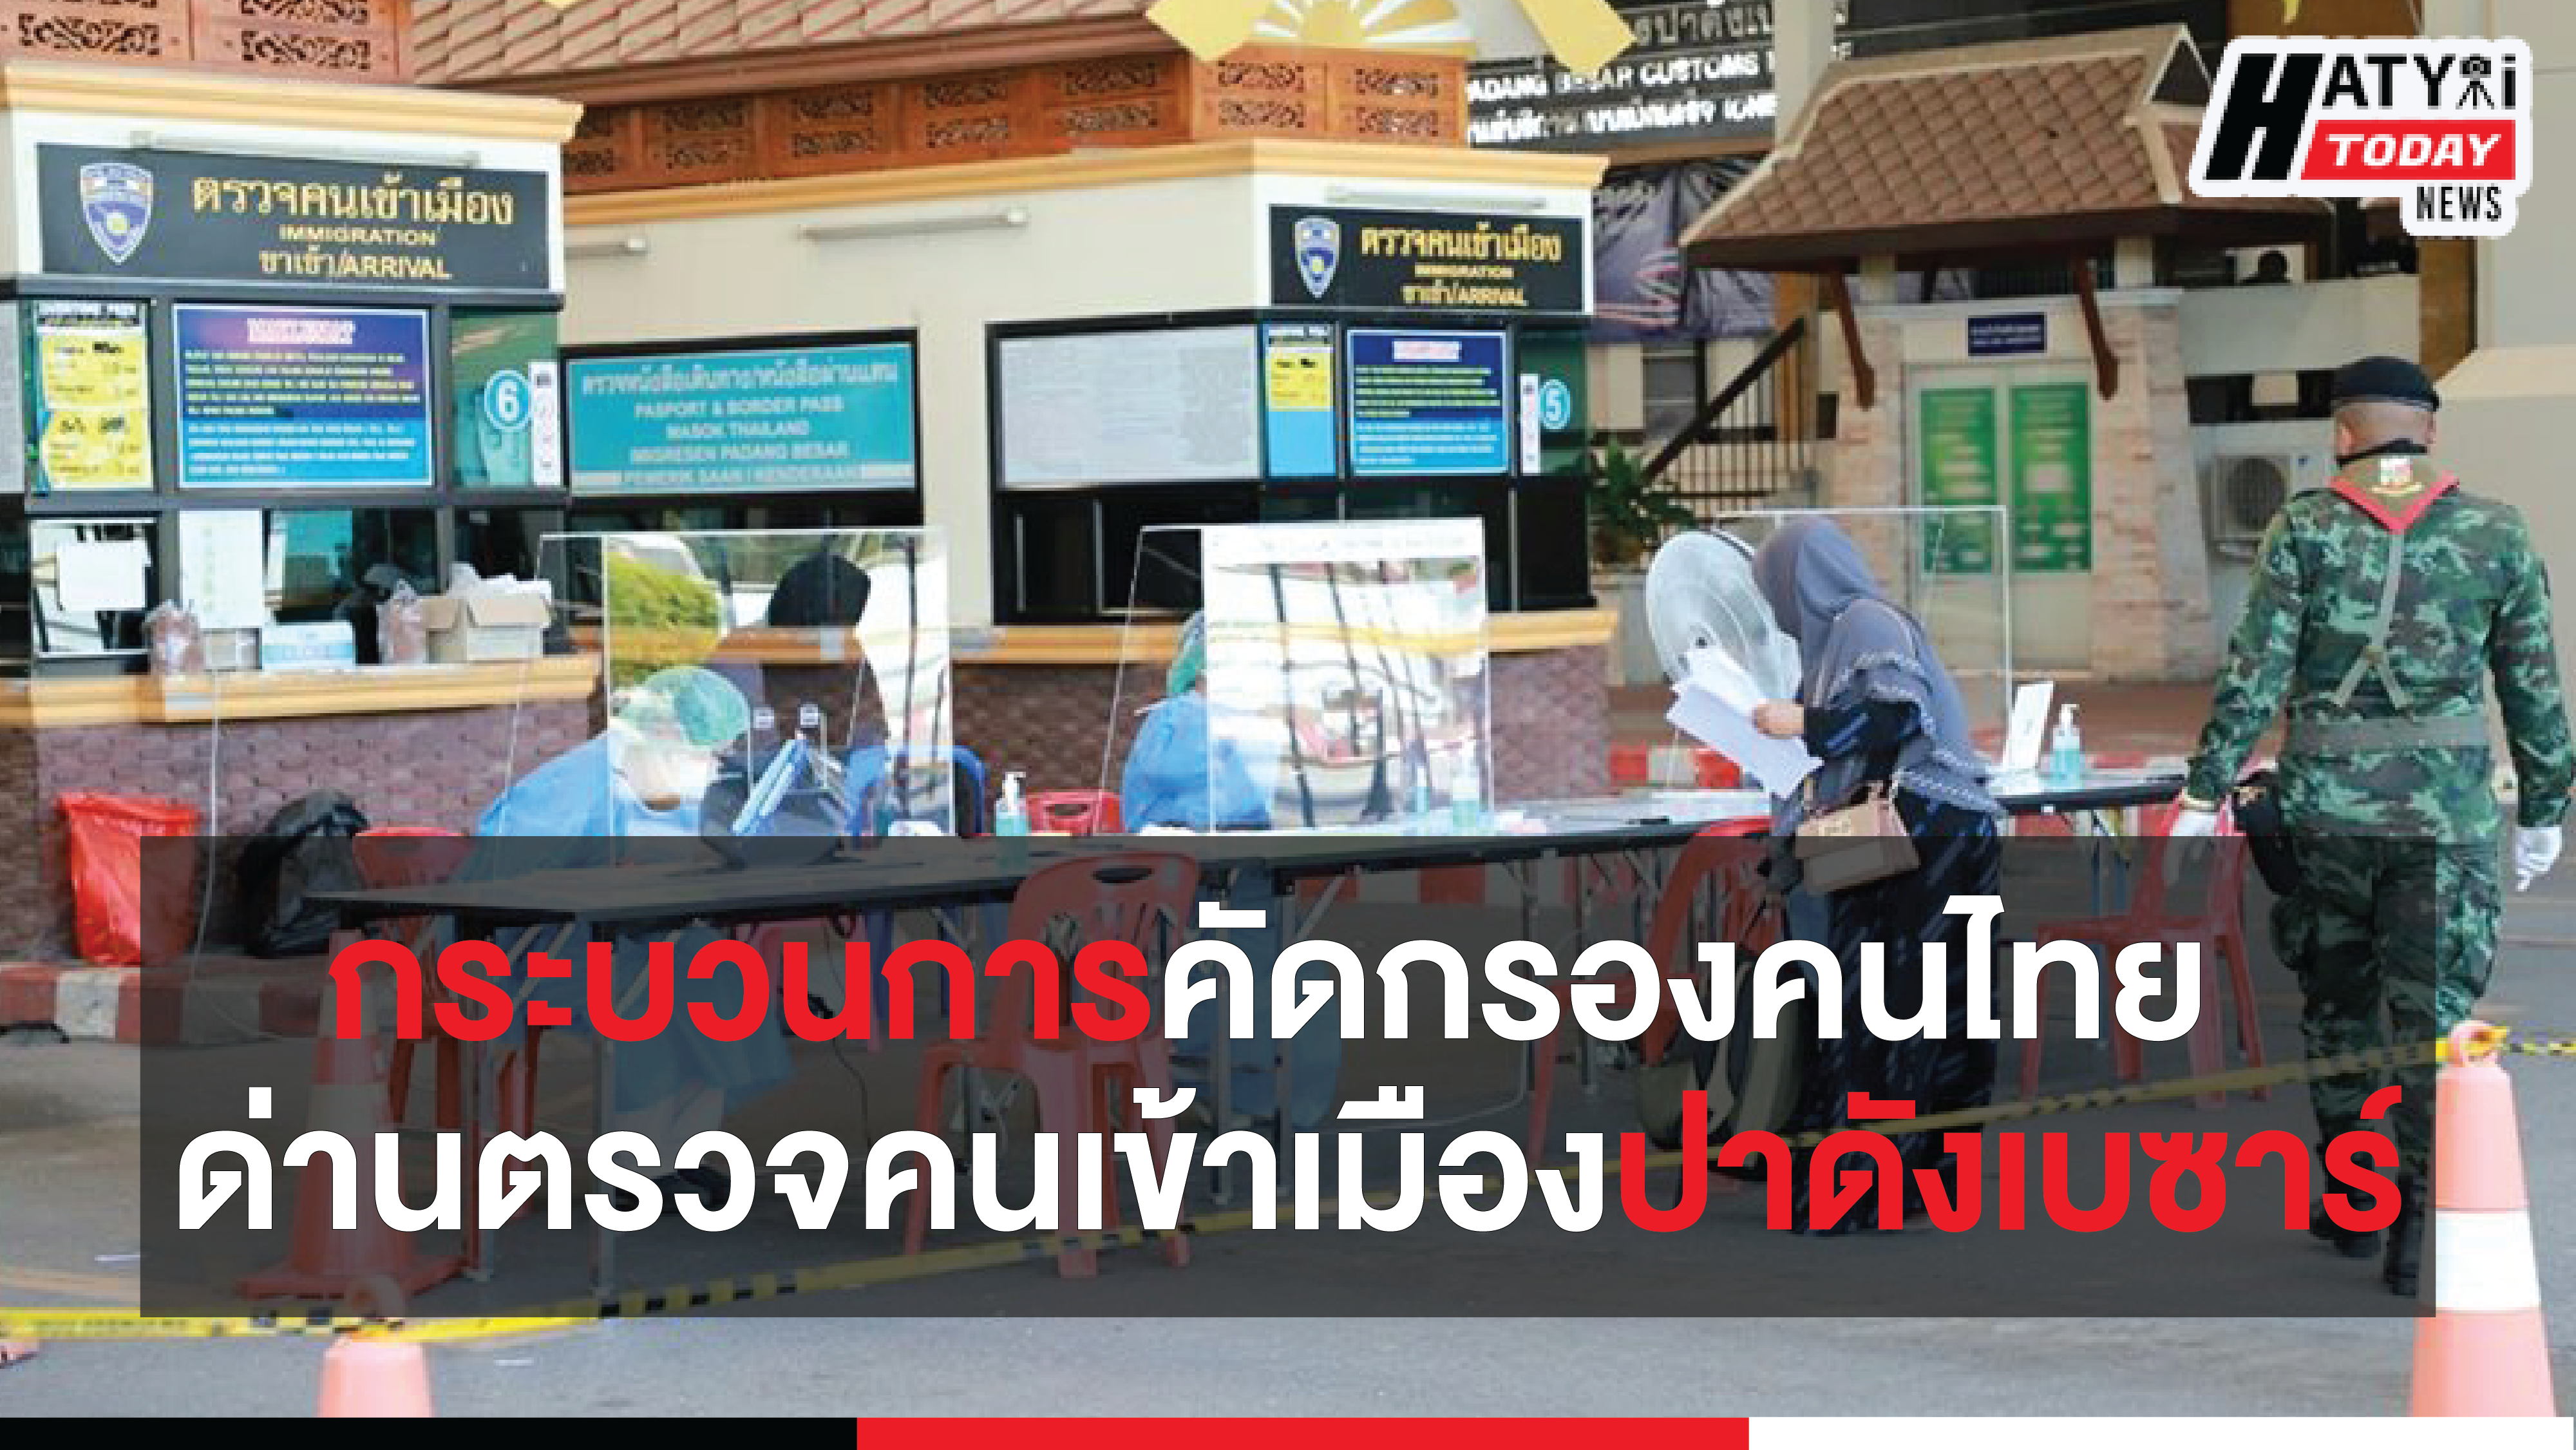 แม่ทัพภาคที่ 4 พร้อมด้วยผู้ว่าฯ สงขลา ลงพื้นที่ติดตามกระบวนการคัดกรองคนไทย ด่านตรวจคนเข้าเมืองปาดังเบซาร์